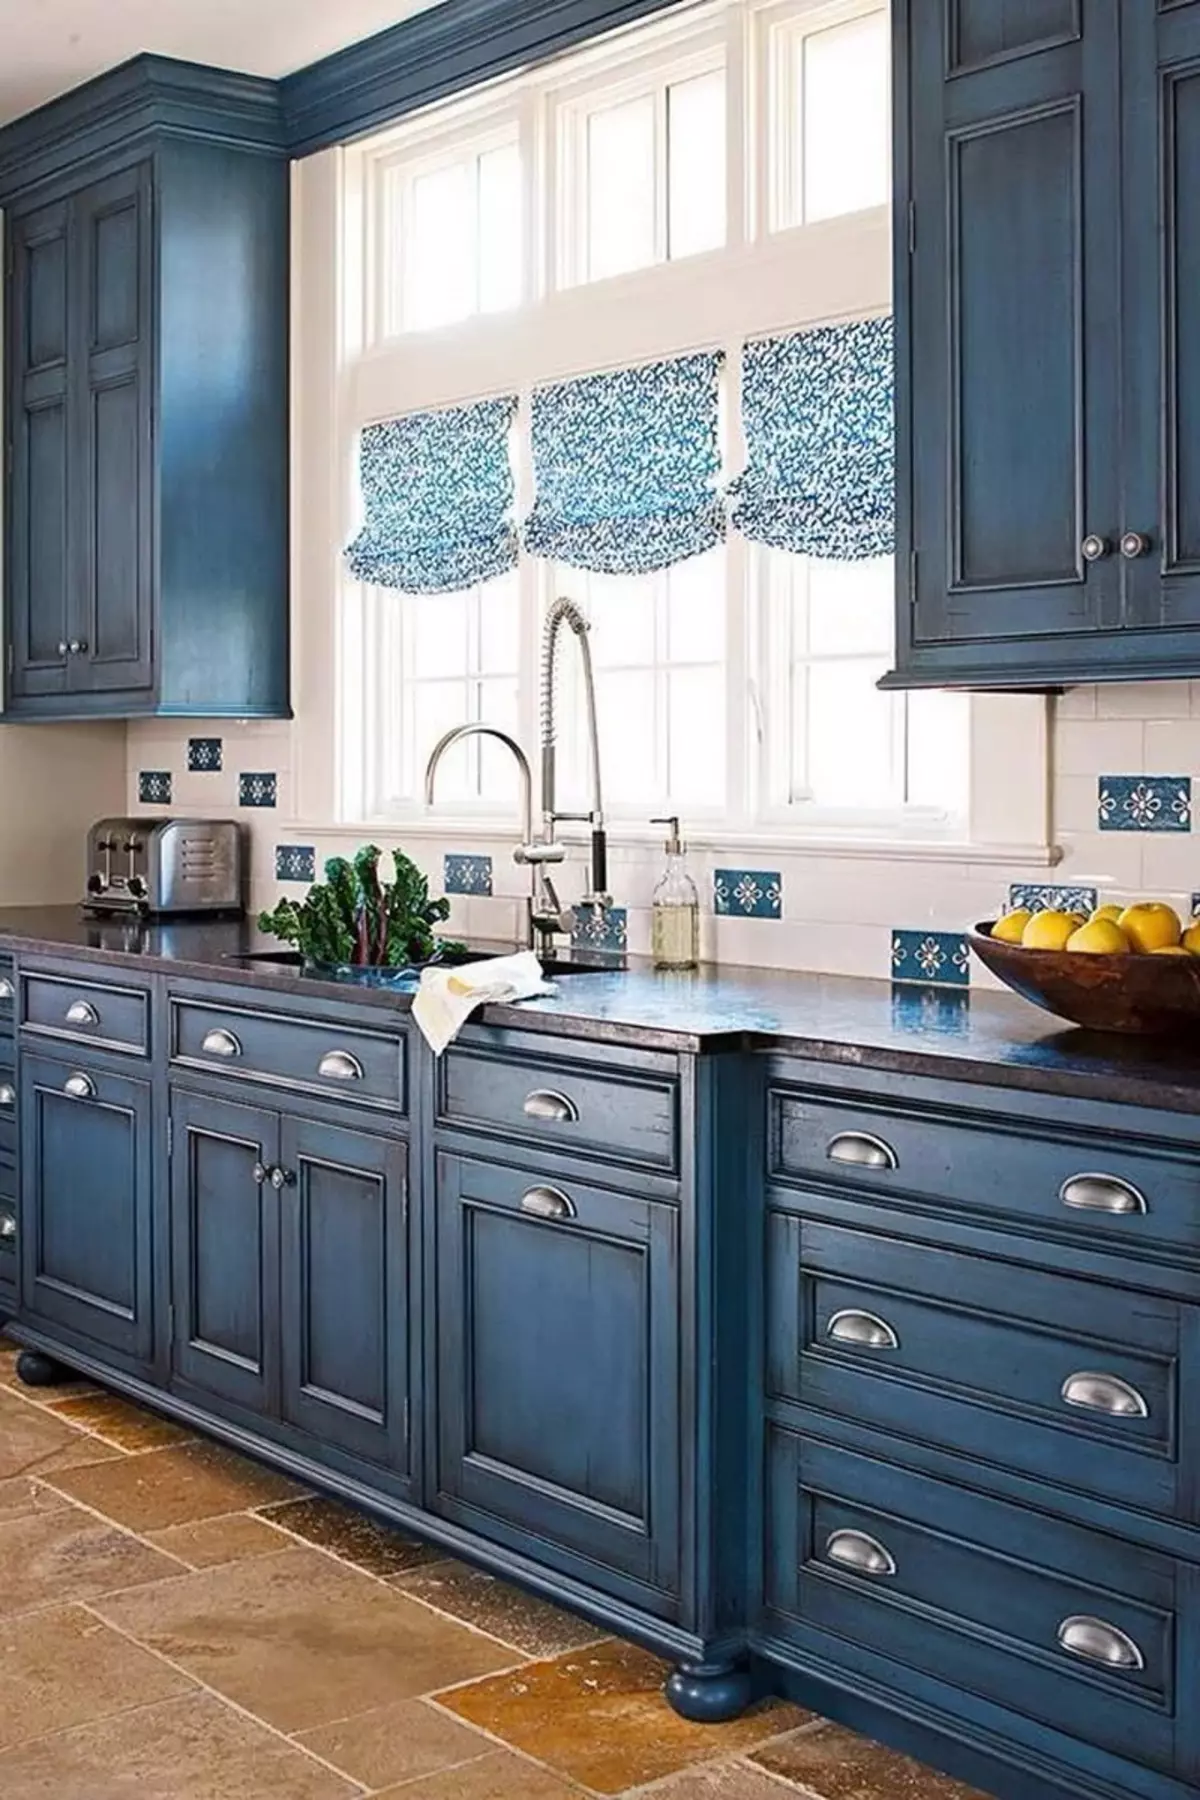 آشپزخانه آبی (82 عکس): چه رنگی در داخل یک آشپزخانه آبی ترکیب شده است؟ طراحی آشپزخانه در آبی رنگ آبی و آبی تیره 9555_53